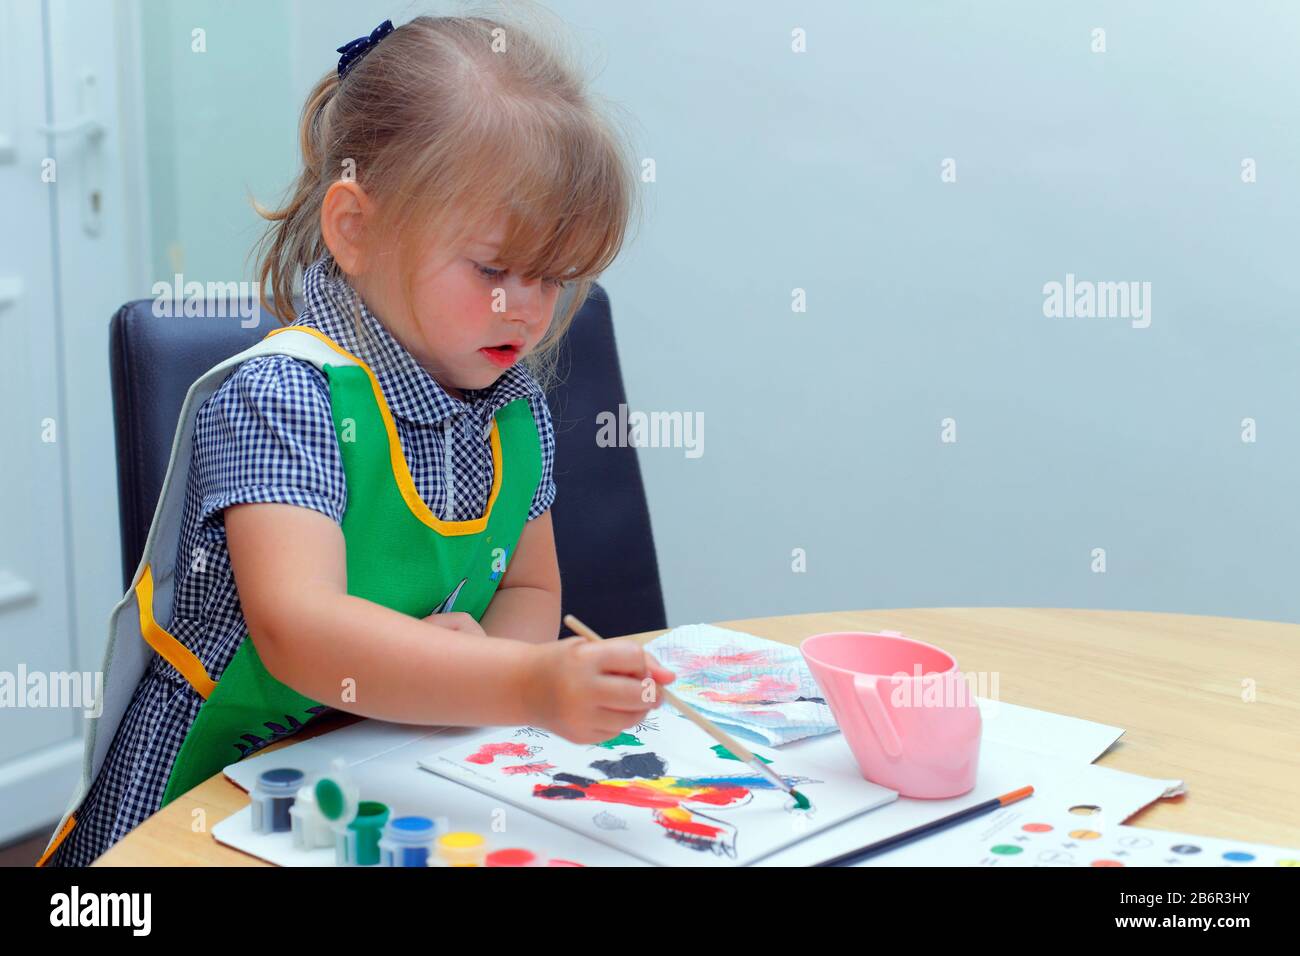 Une petite fille à l'aide d'un pinceau pour peindre une photo Banque D'Images